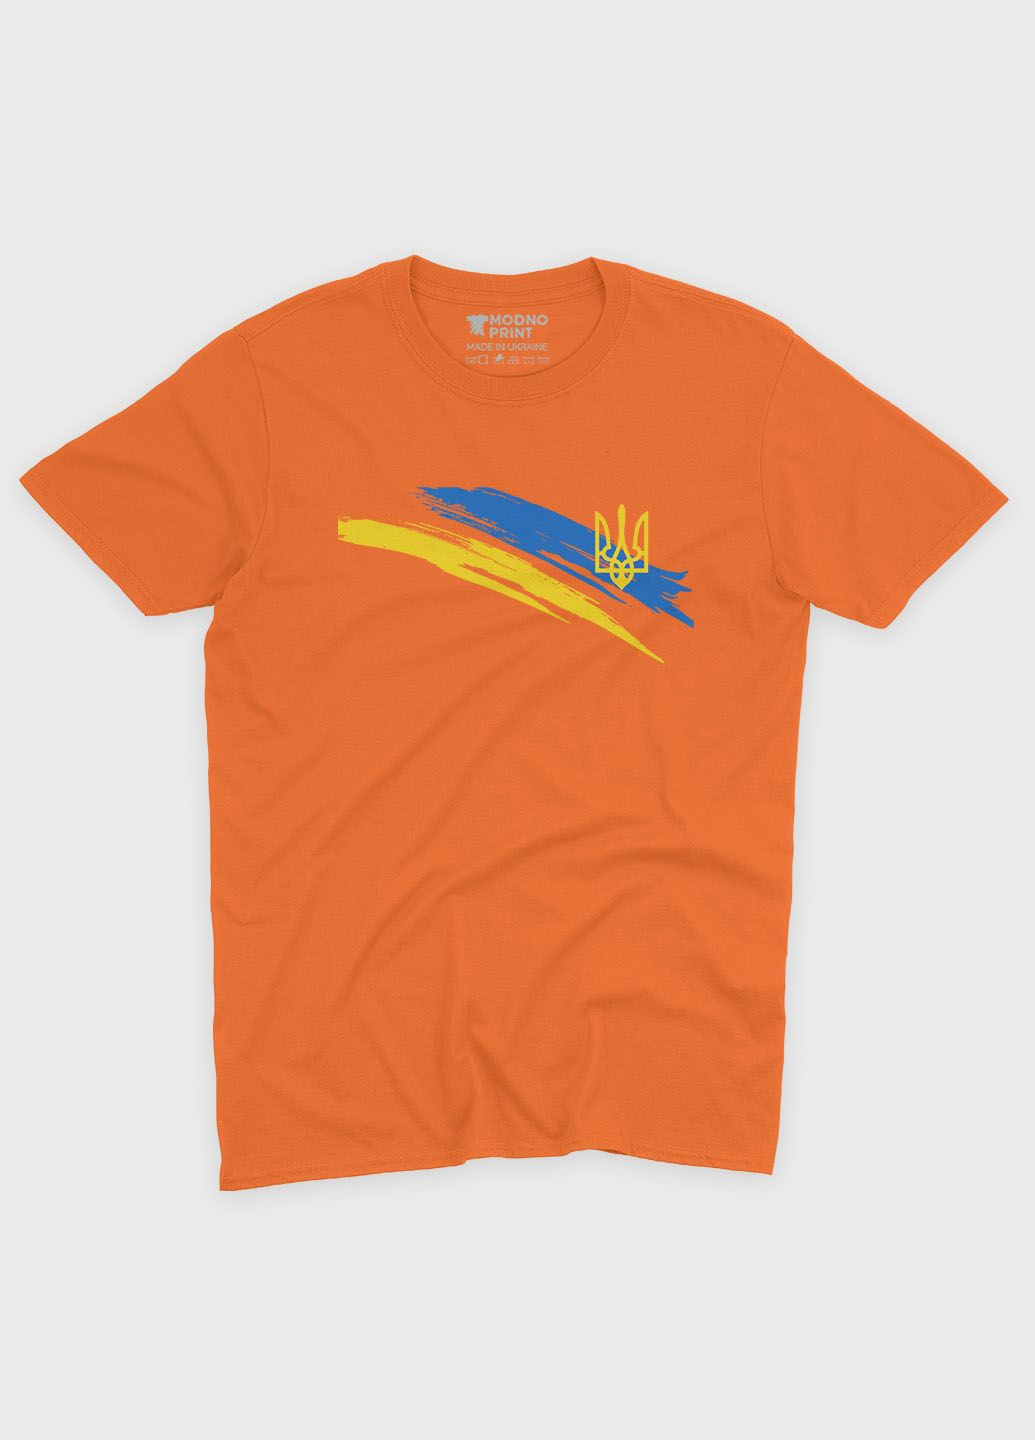 Оранжевая мужская футболка с патриотическим принтом гербтризуб (ts001-4-ora-005-1-086) Modno